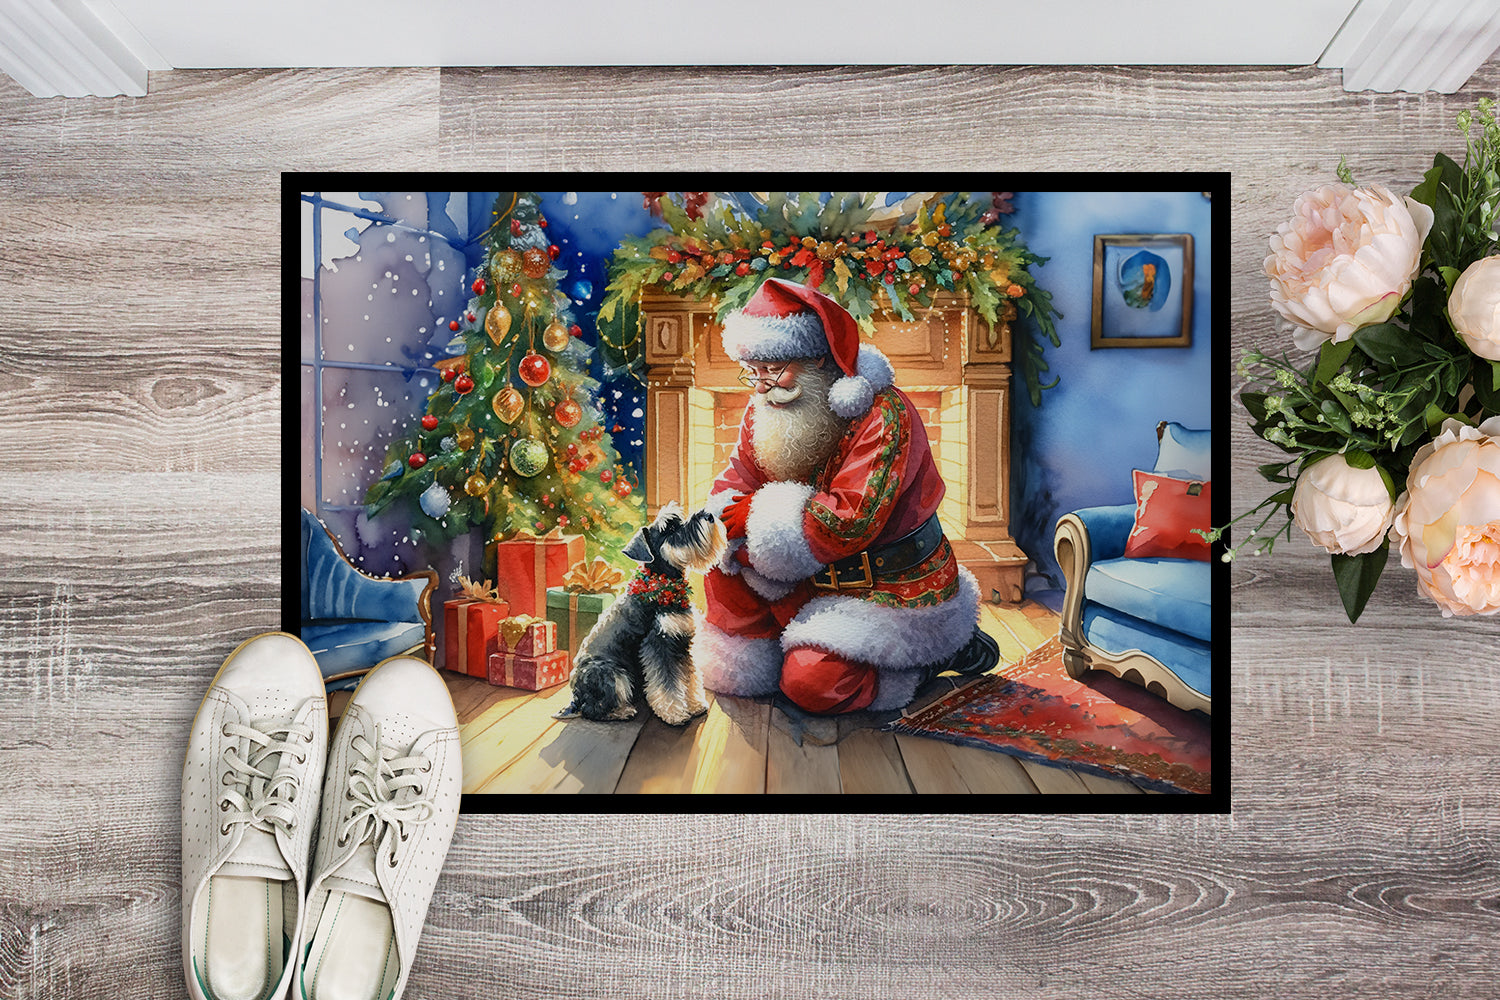 Schnauzer and Santa Claus Doormat